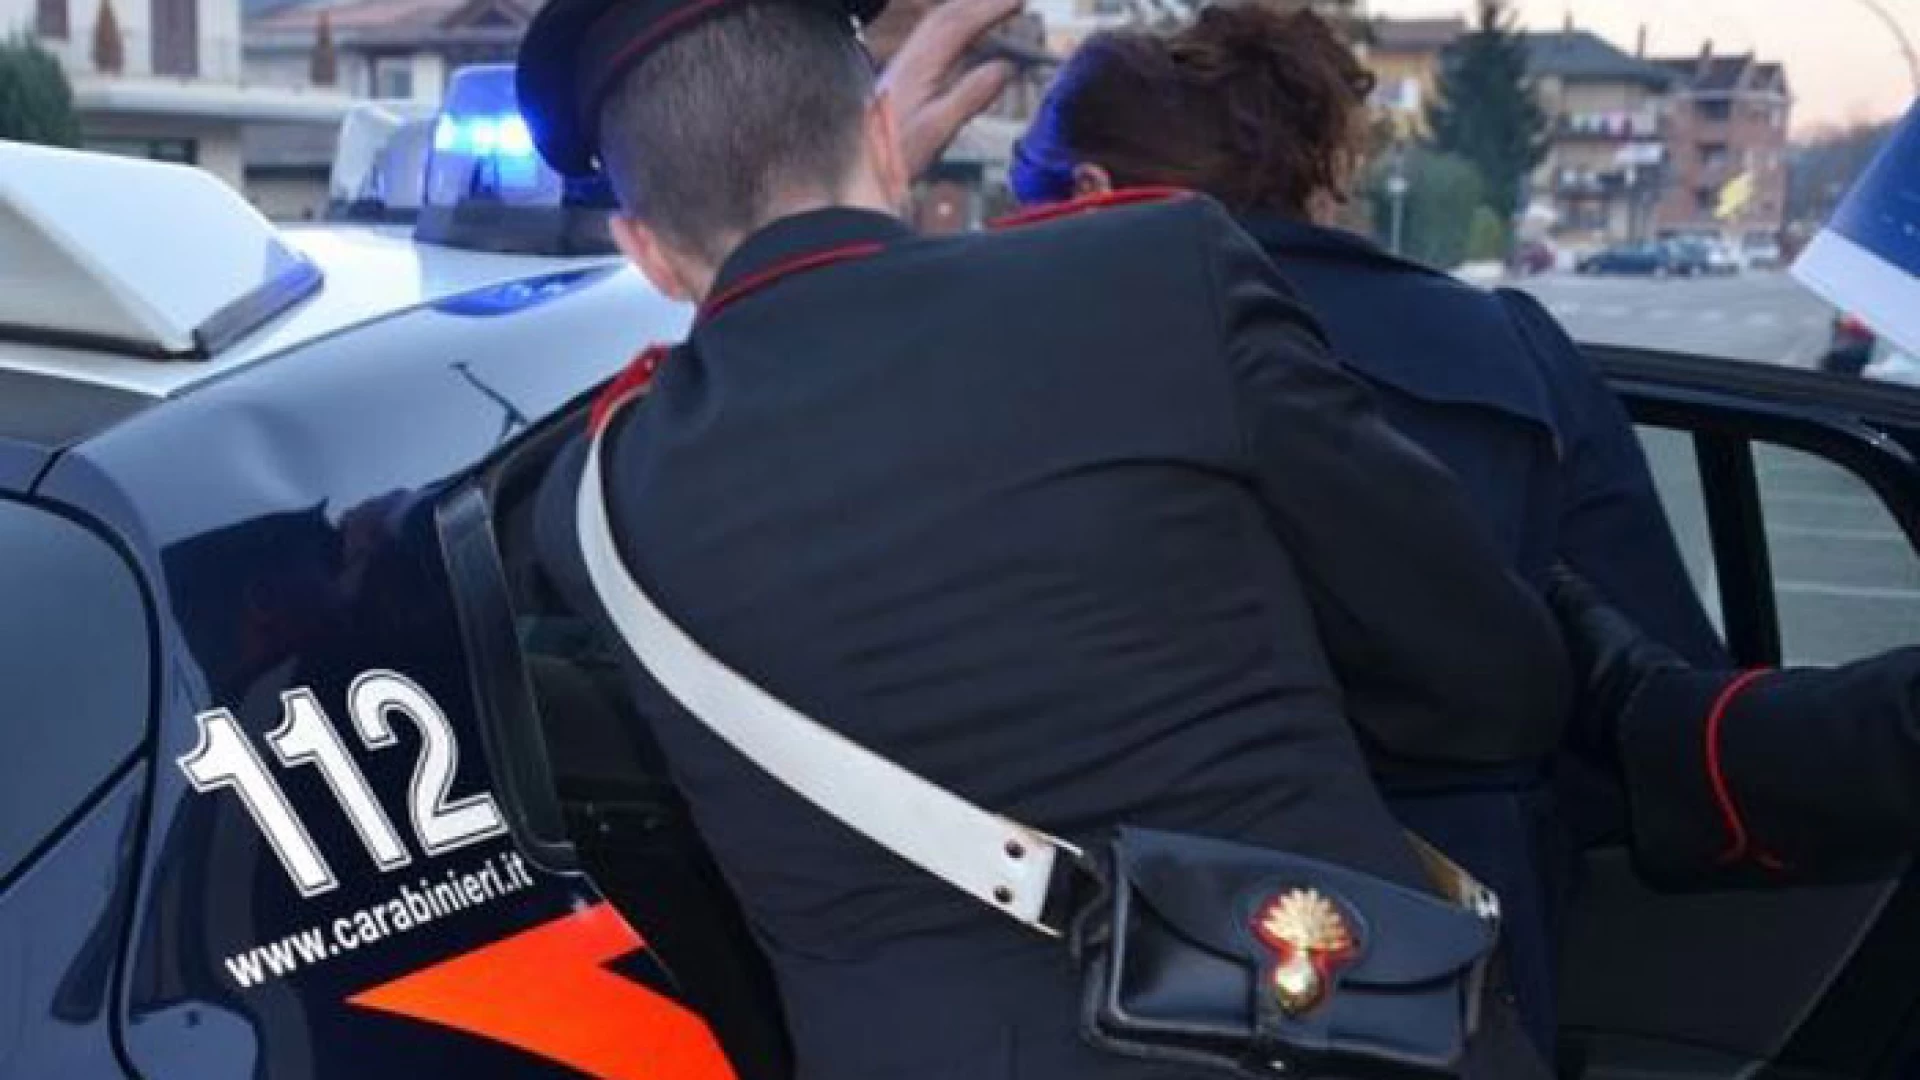 Isernia: Maltrattamenti in famiglia e violenza sessuale, i Carabinieri eseguono una misura cautelare a carico di un 40enne.